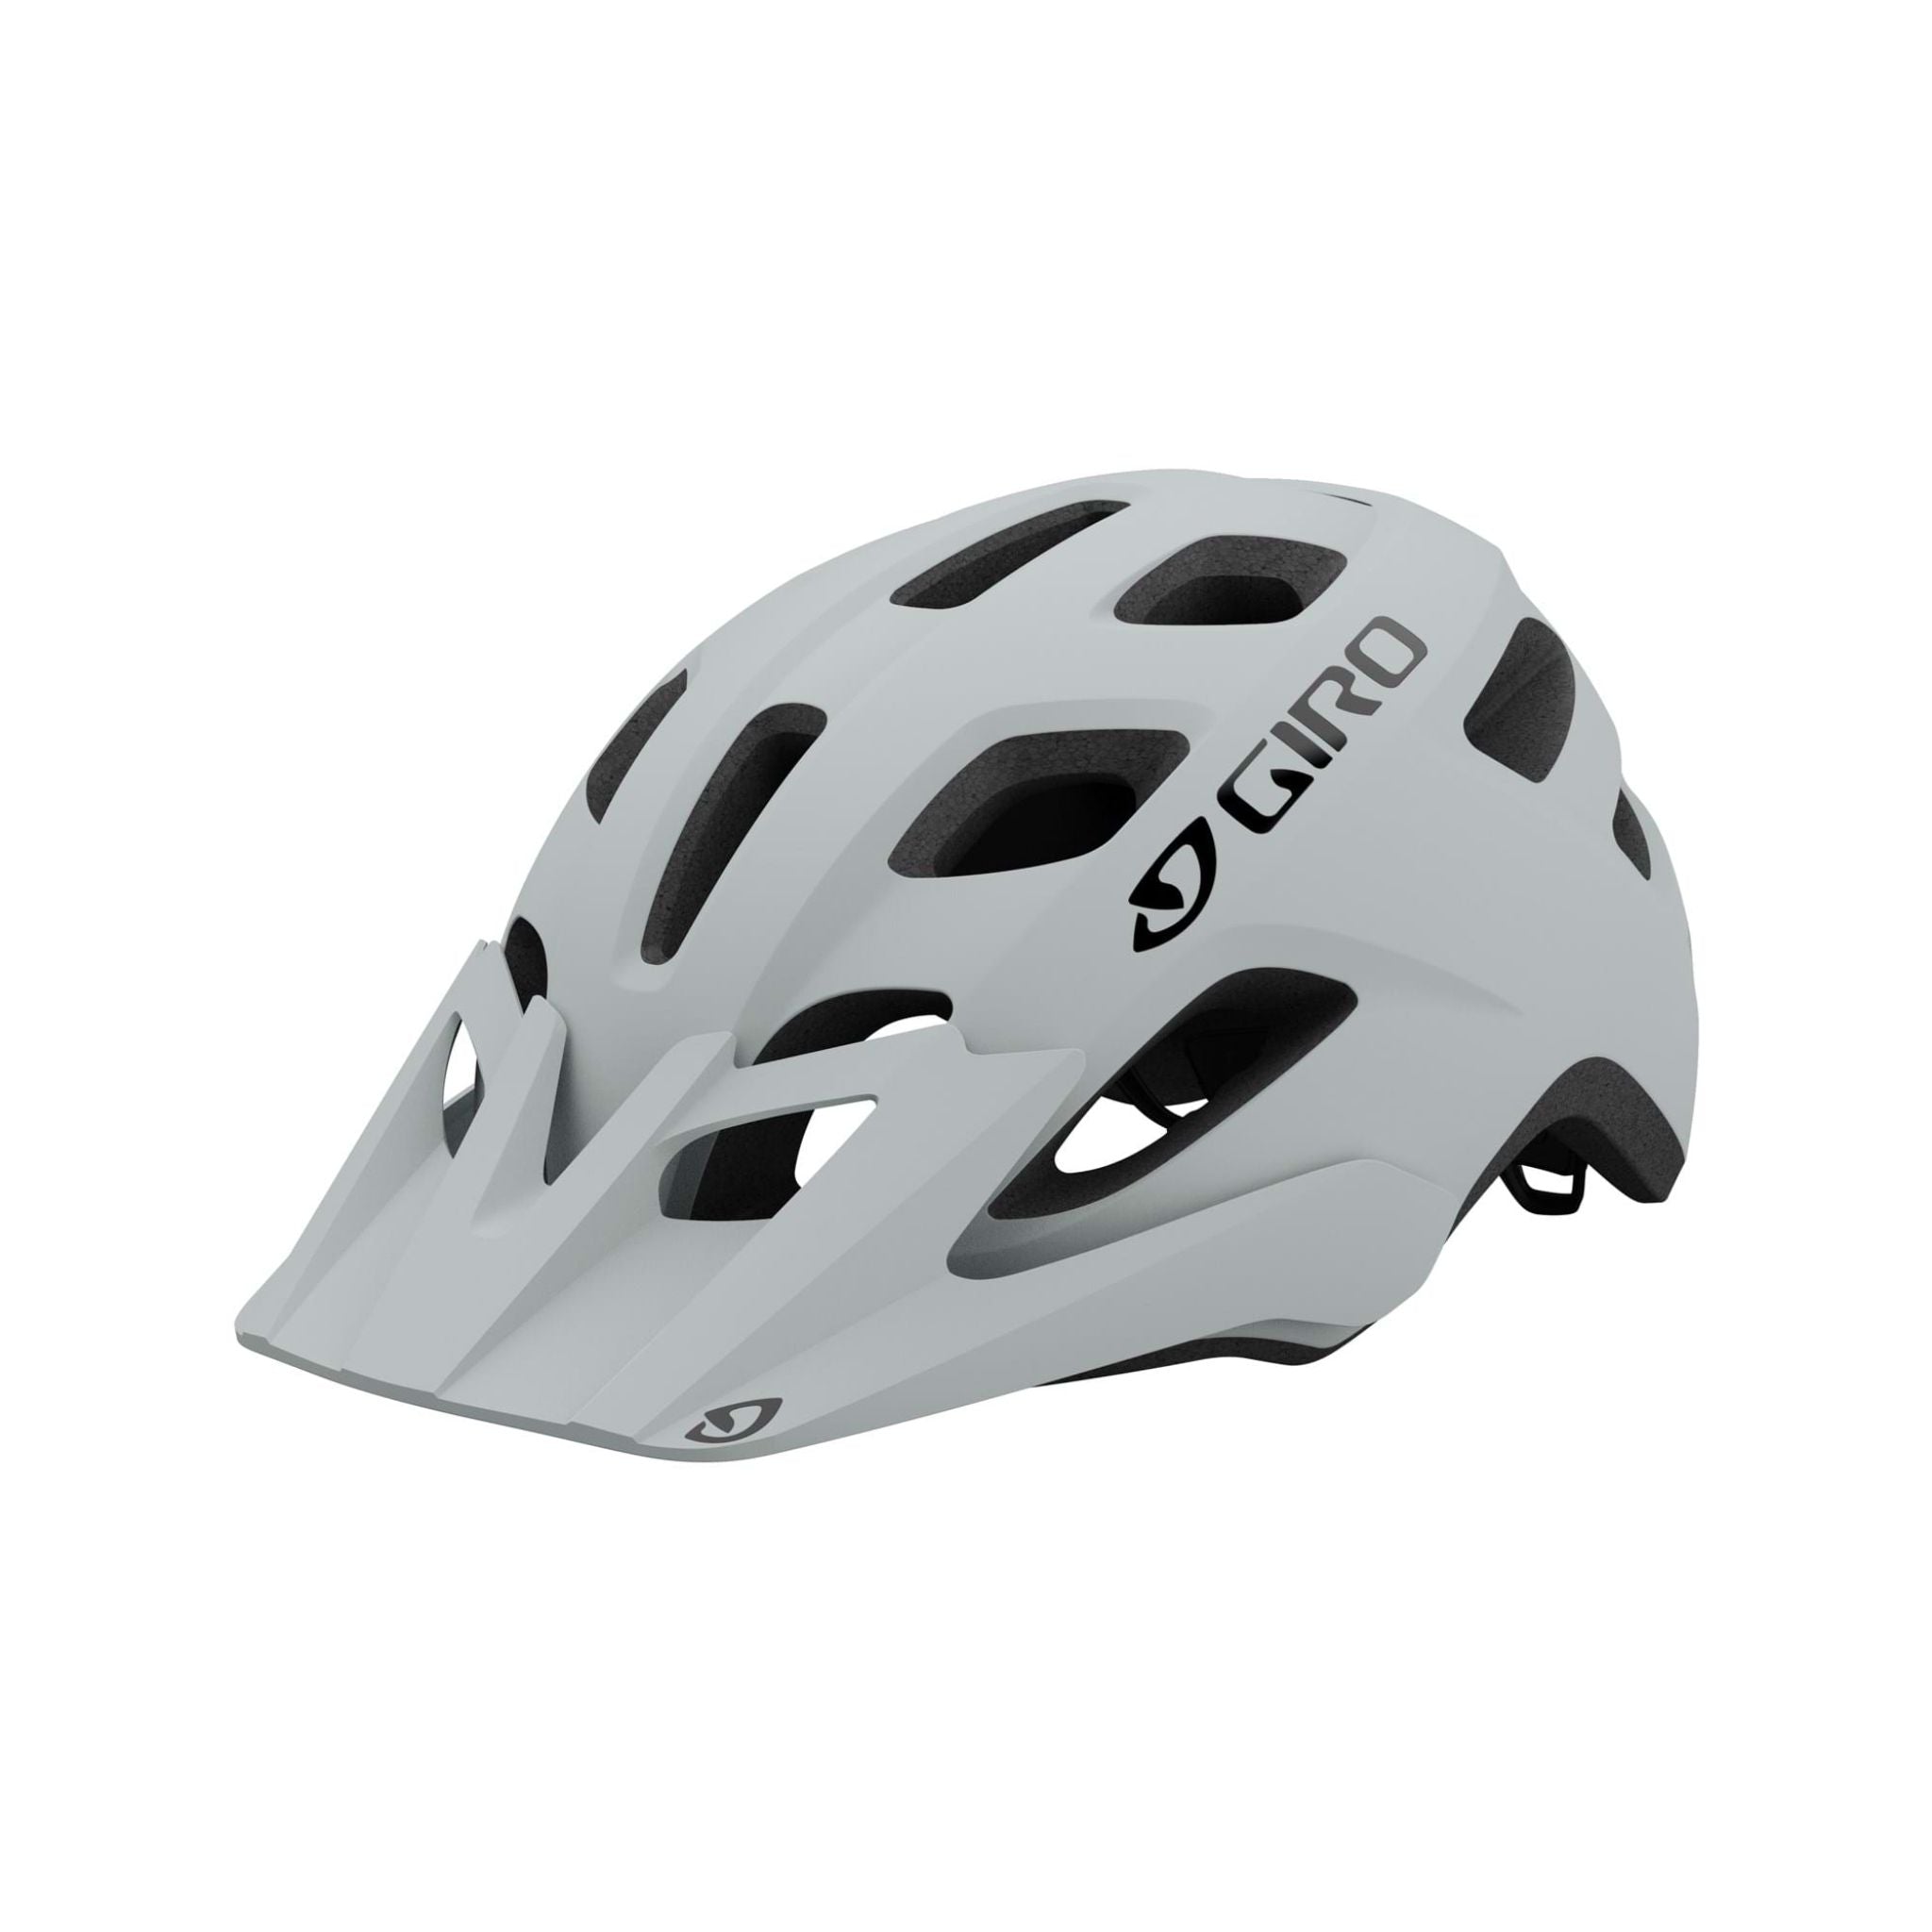 Giro Fixture MTB Helmet